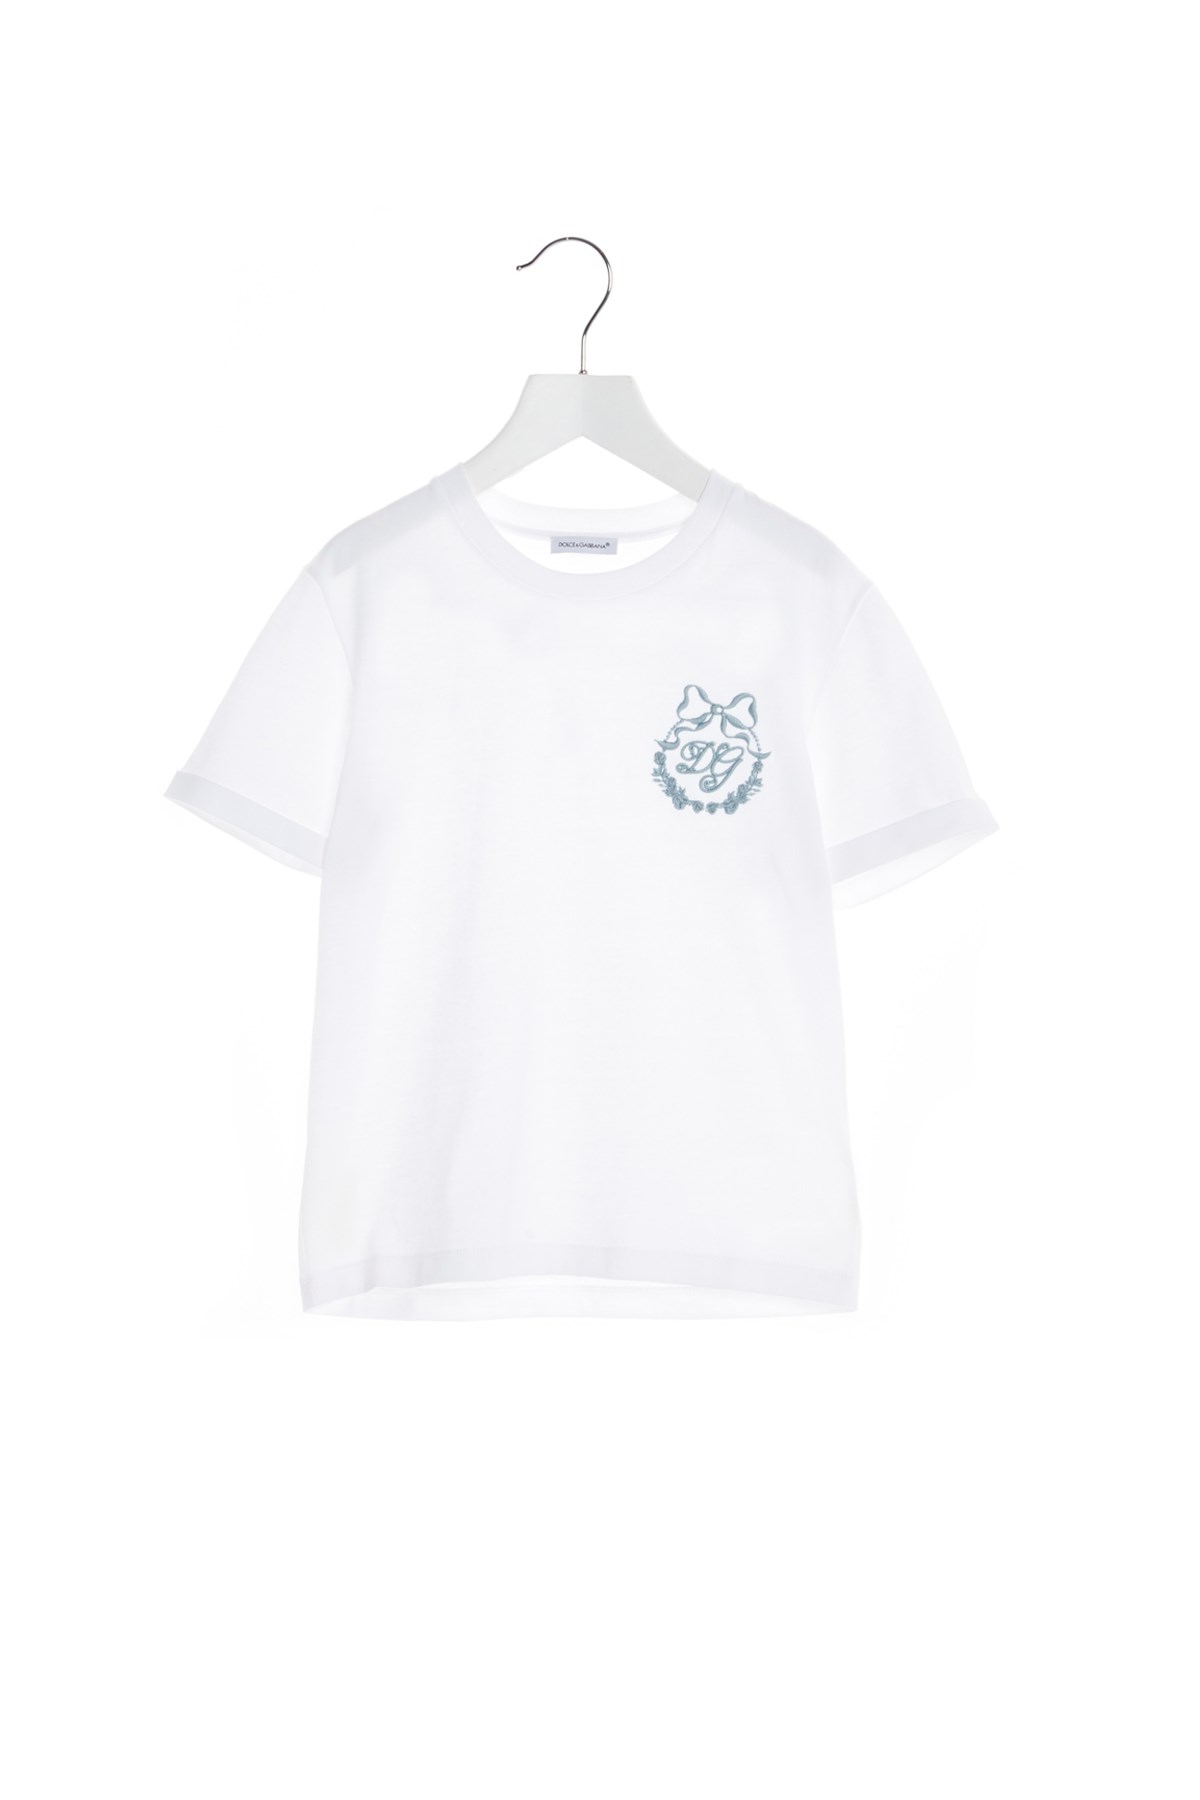 DOLCE & GABBANA Logo T-Shirt